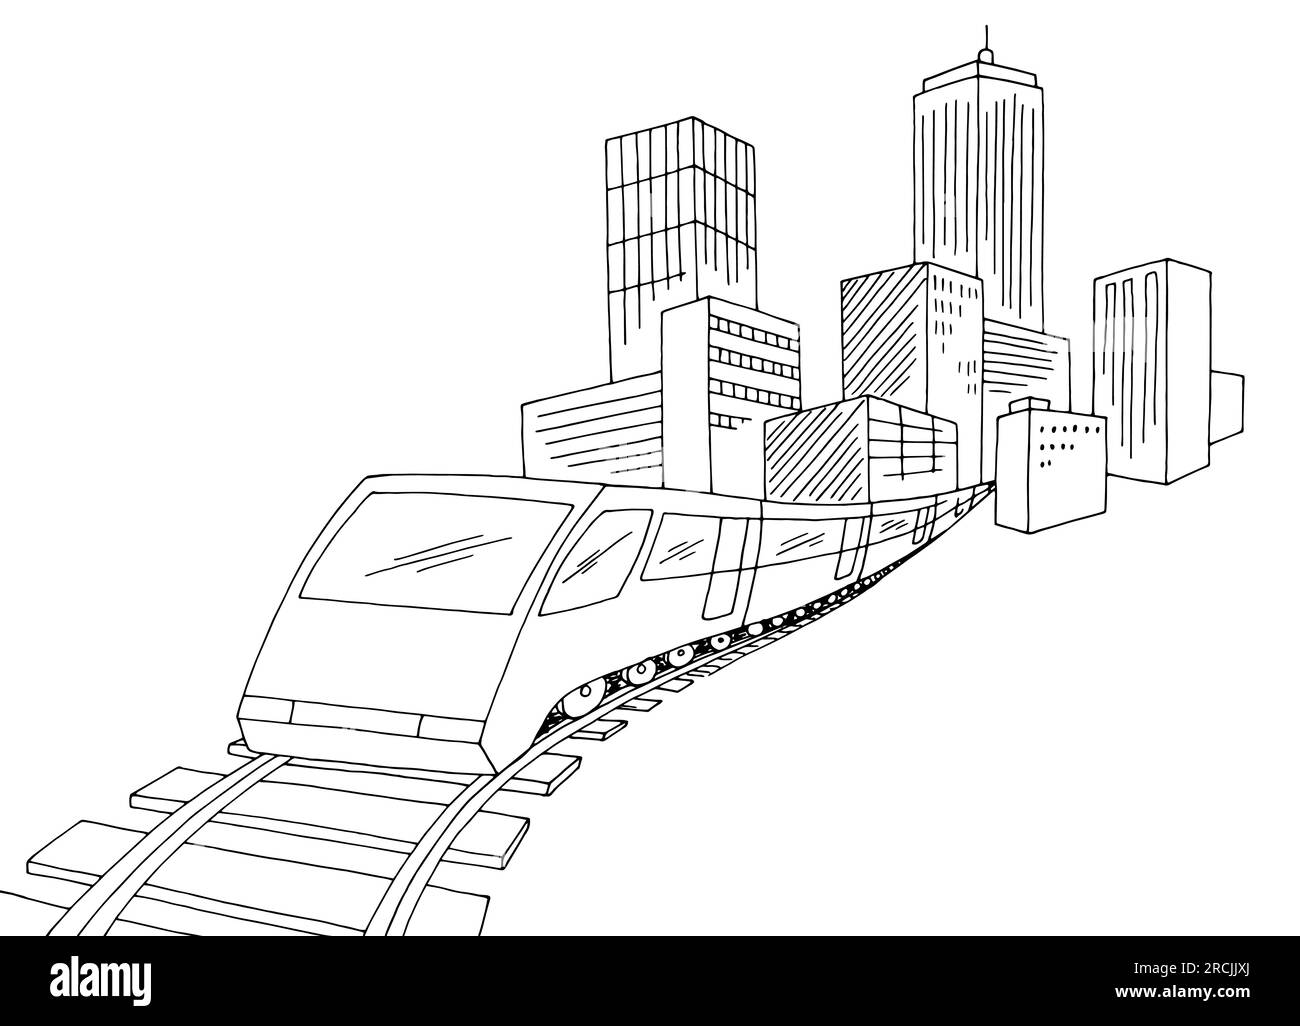 Zug von der Eisenbahn aus der Stadtgrafik Schwarzweiß Landschaftszeichnung Zeichnungsvektor Stock Vektor